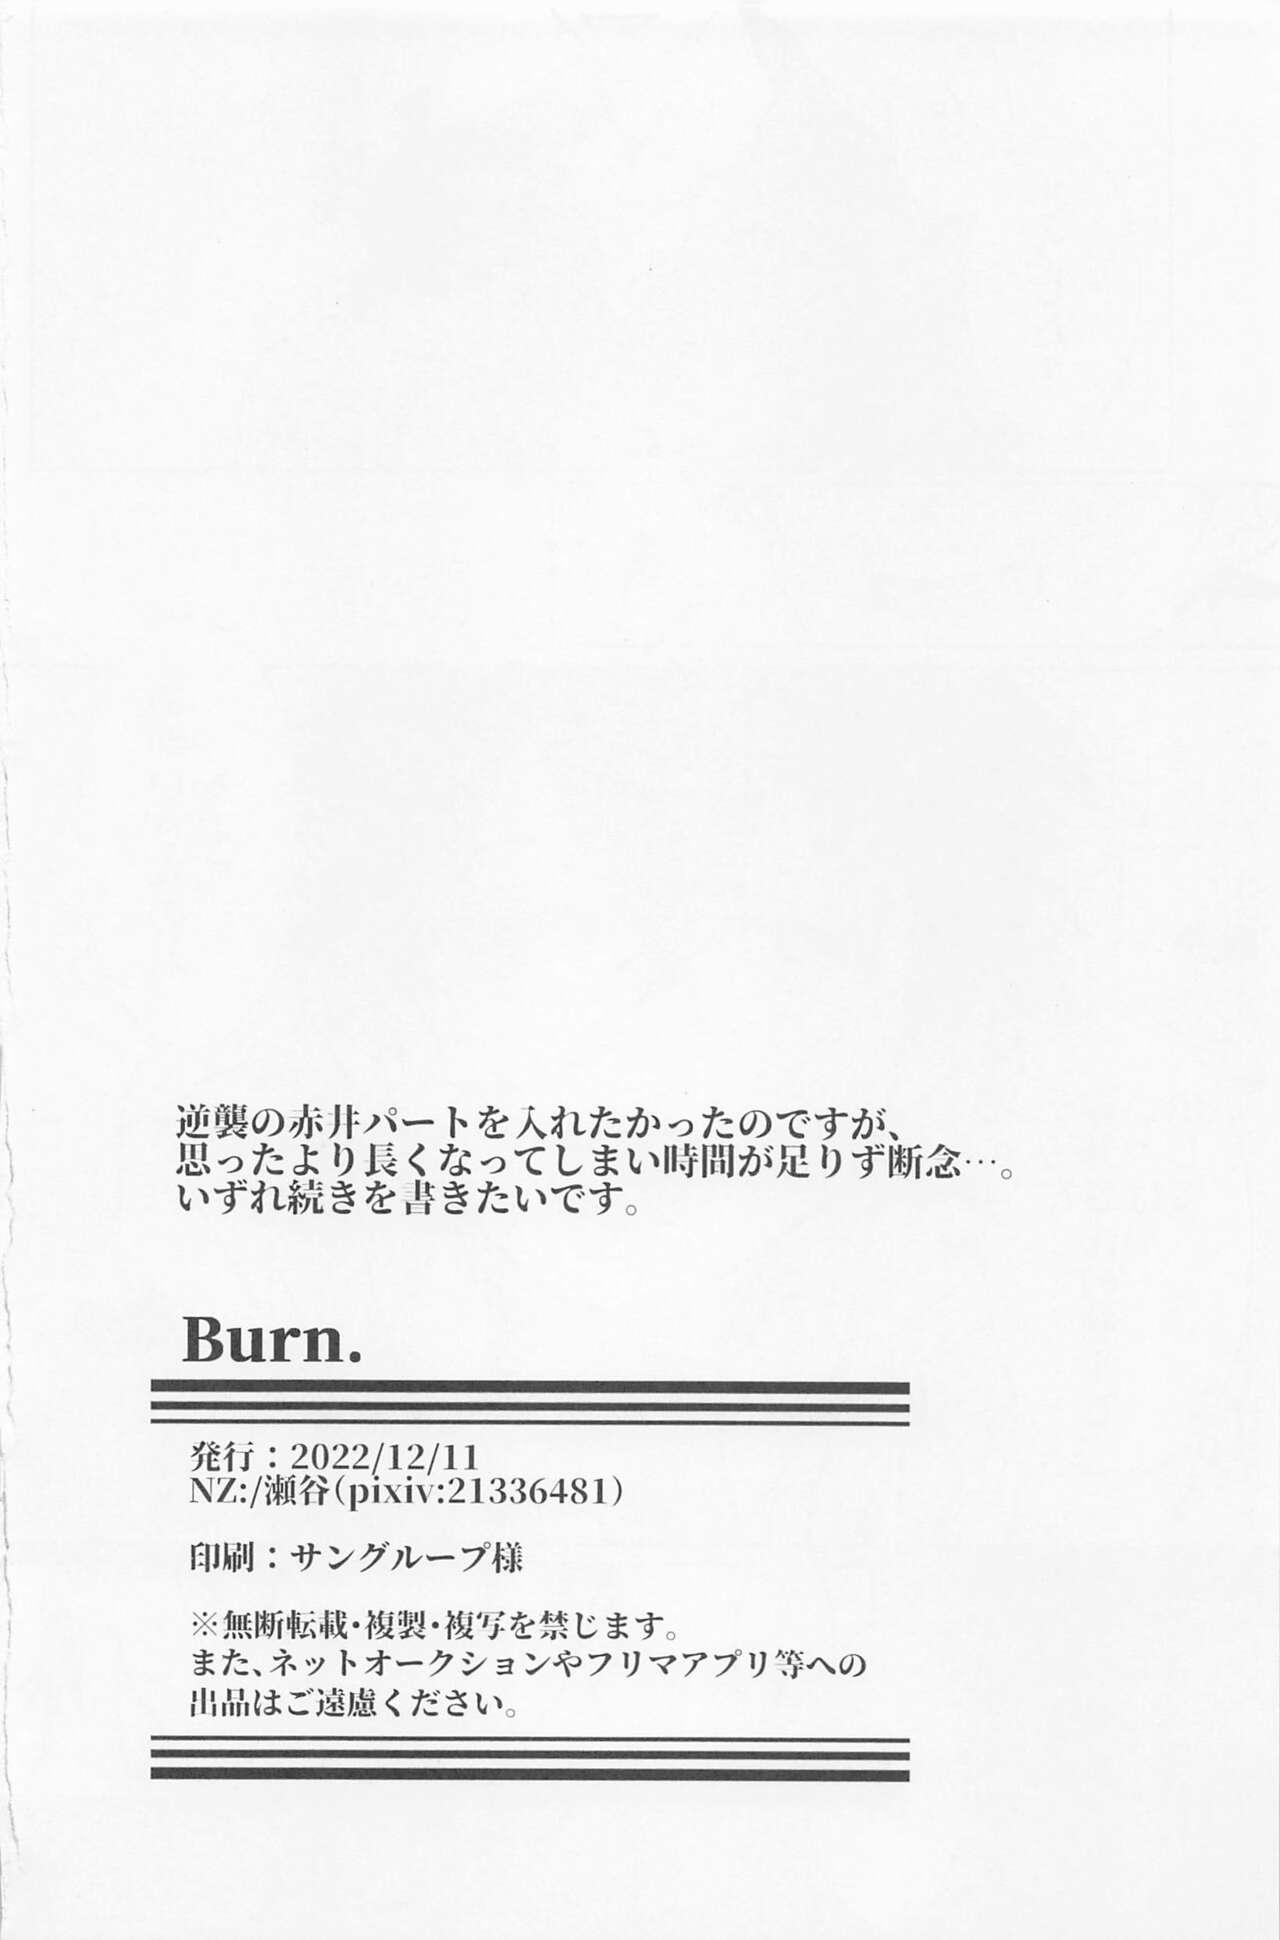 Burn. 16